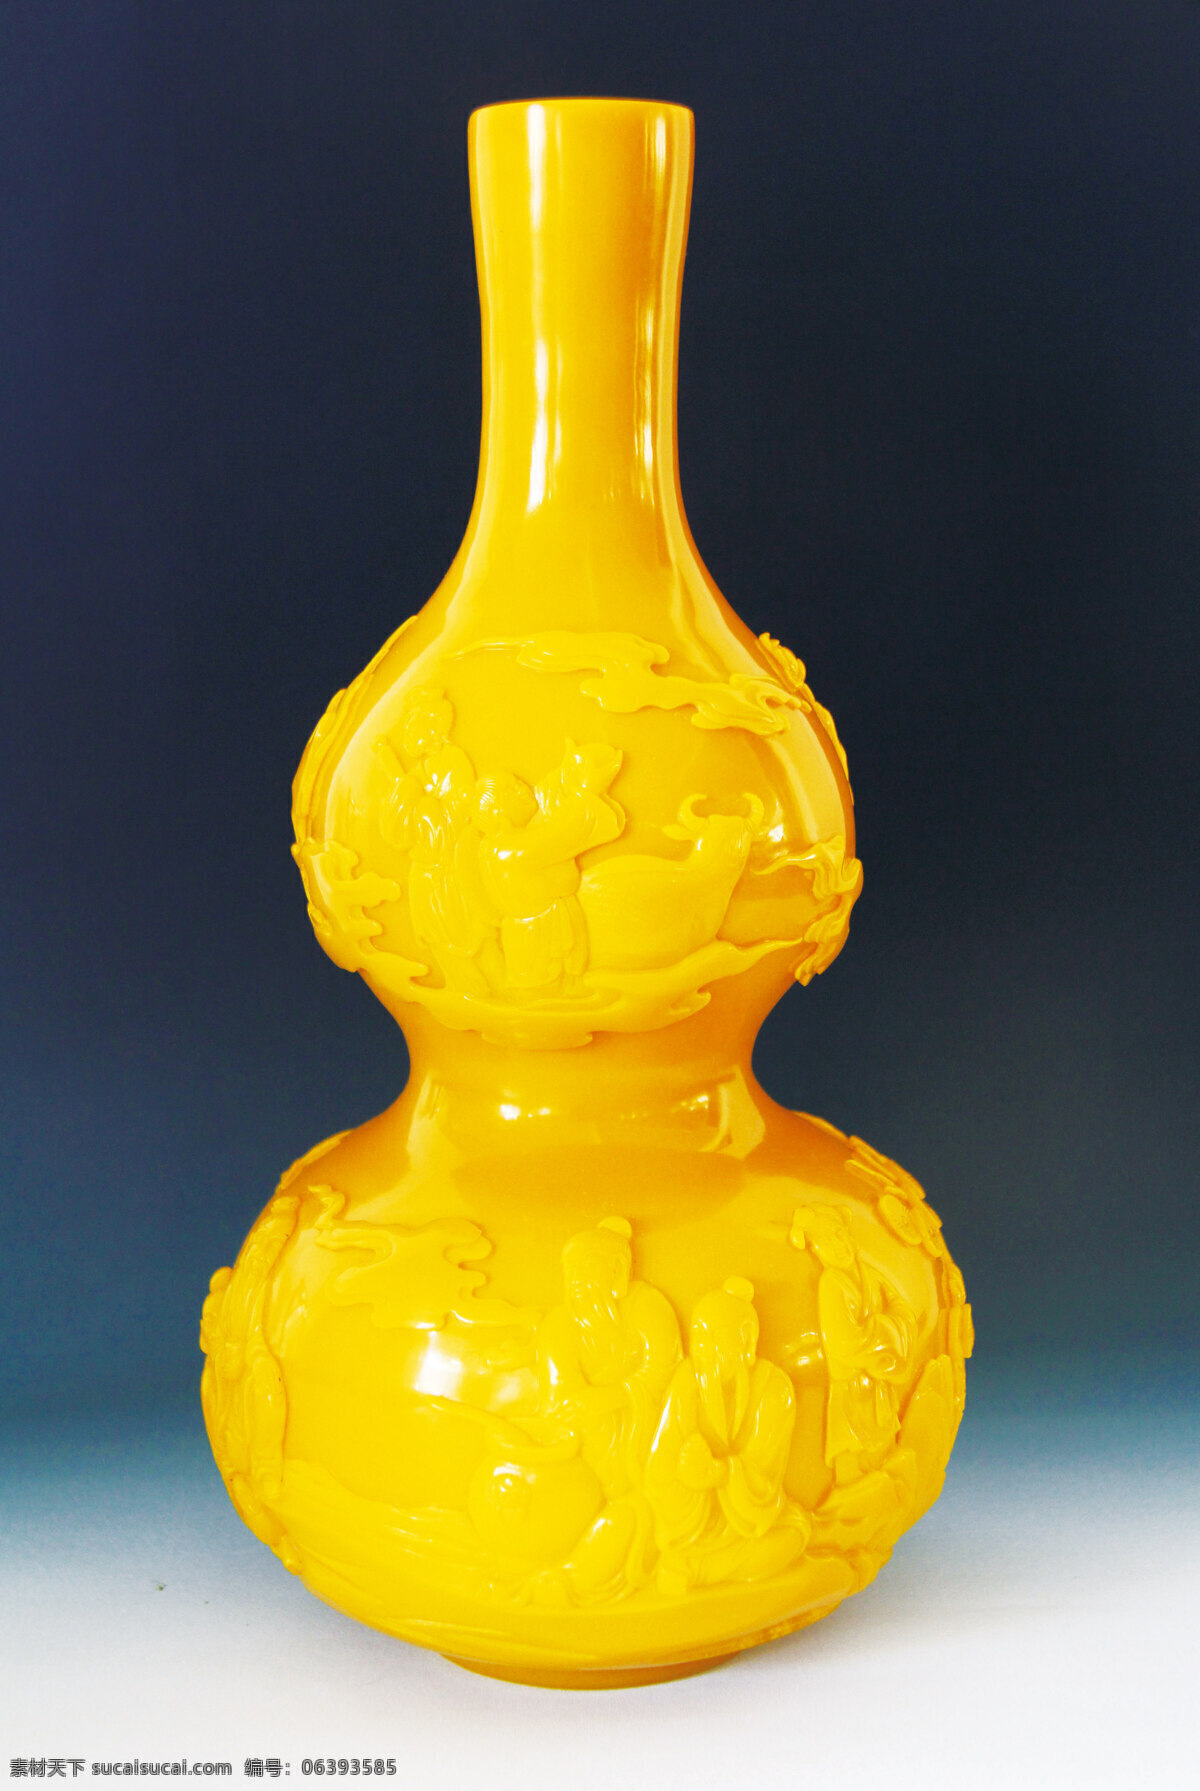 鸡油黄 艺术品 拍照 艺术品摄影 价值 黄金 雕刻 传统技法 文化传承 料器艺术 文化艺术